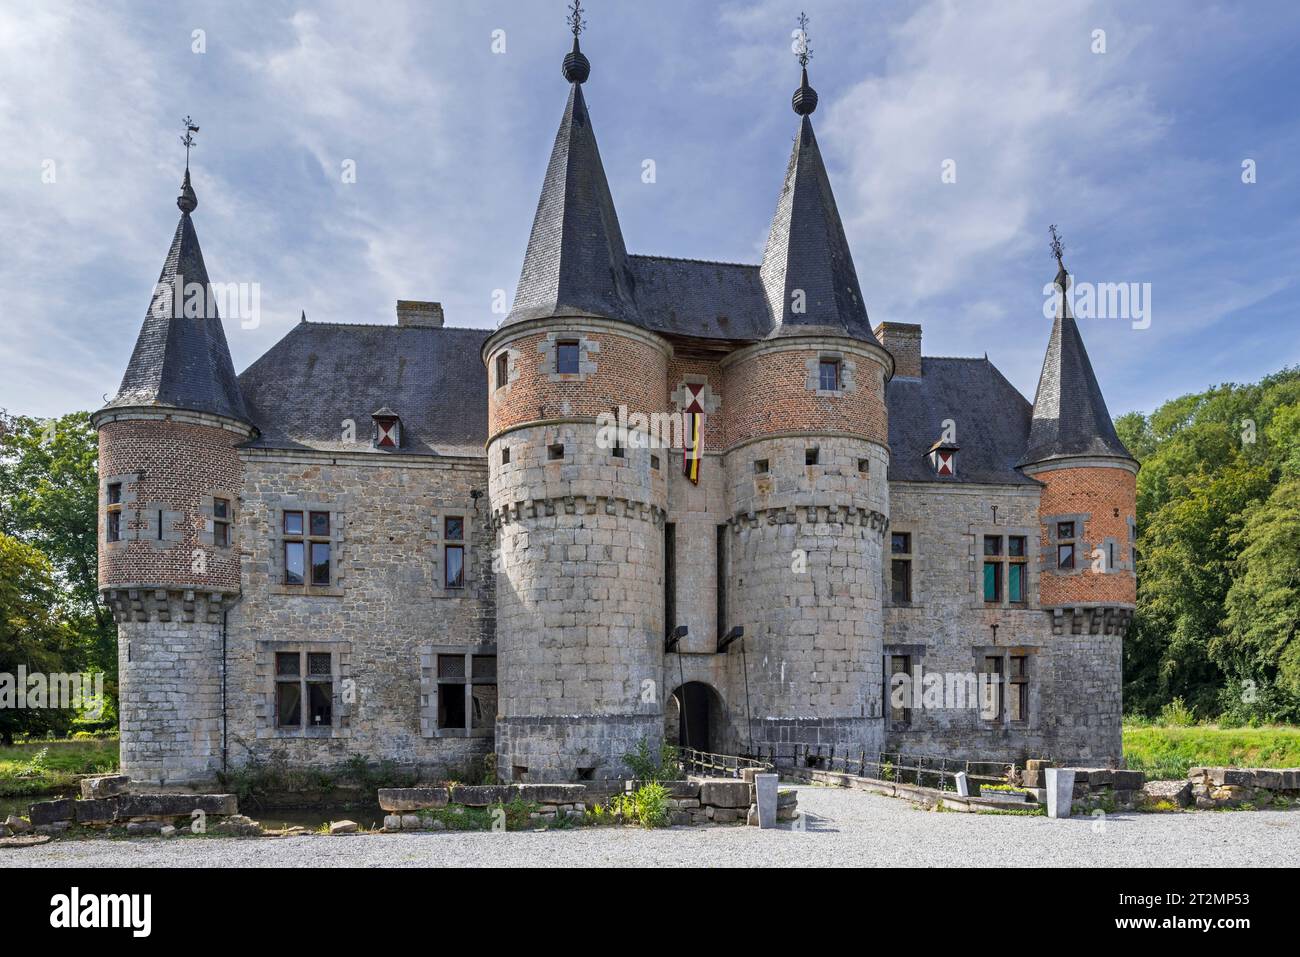 Château de Spontin, château médiéval du 16e siècle à douves près d'Yvoir, province de Namur, Ardennes belges, Wallonie, Belgique Banque D'Images